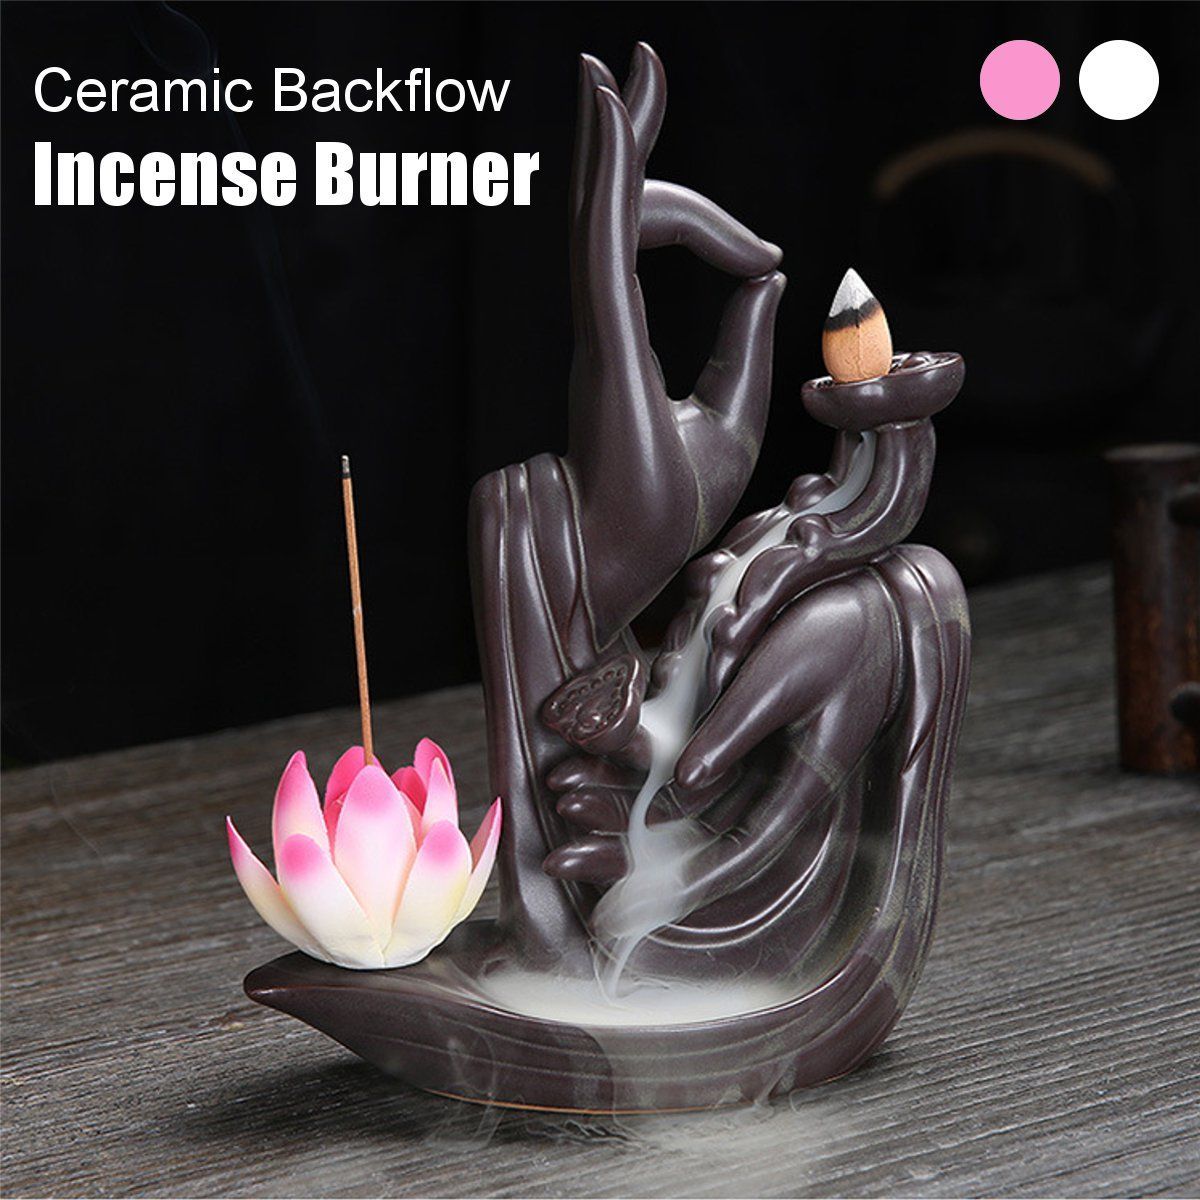 Ceramic-Backflow-Incense-Burner-Retro-Censer-Holder-Home-Decoration-1633199